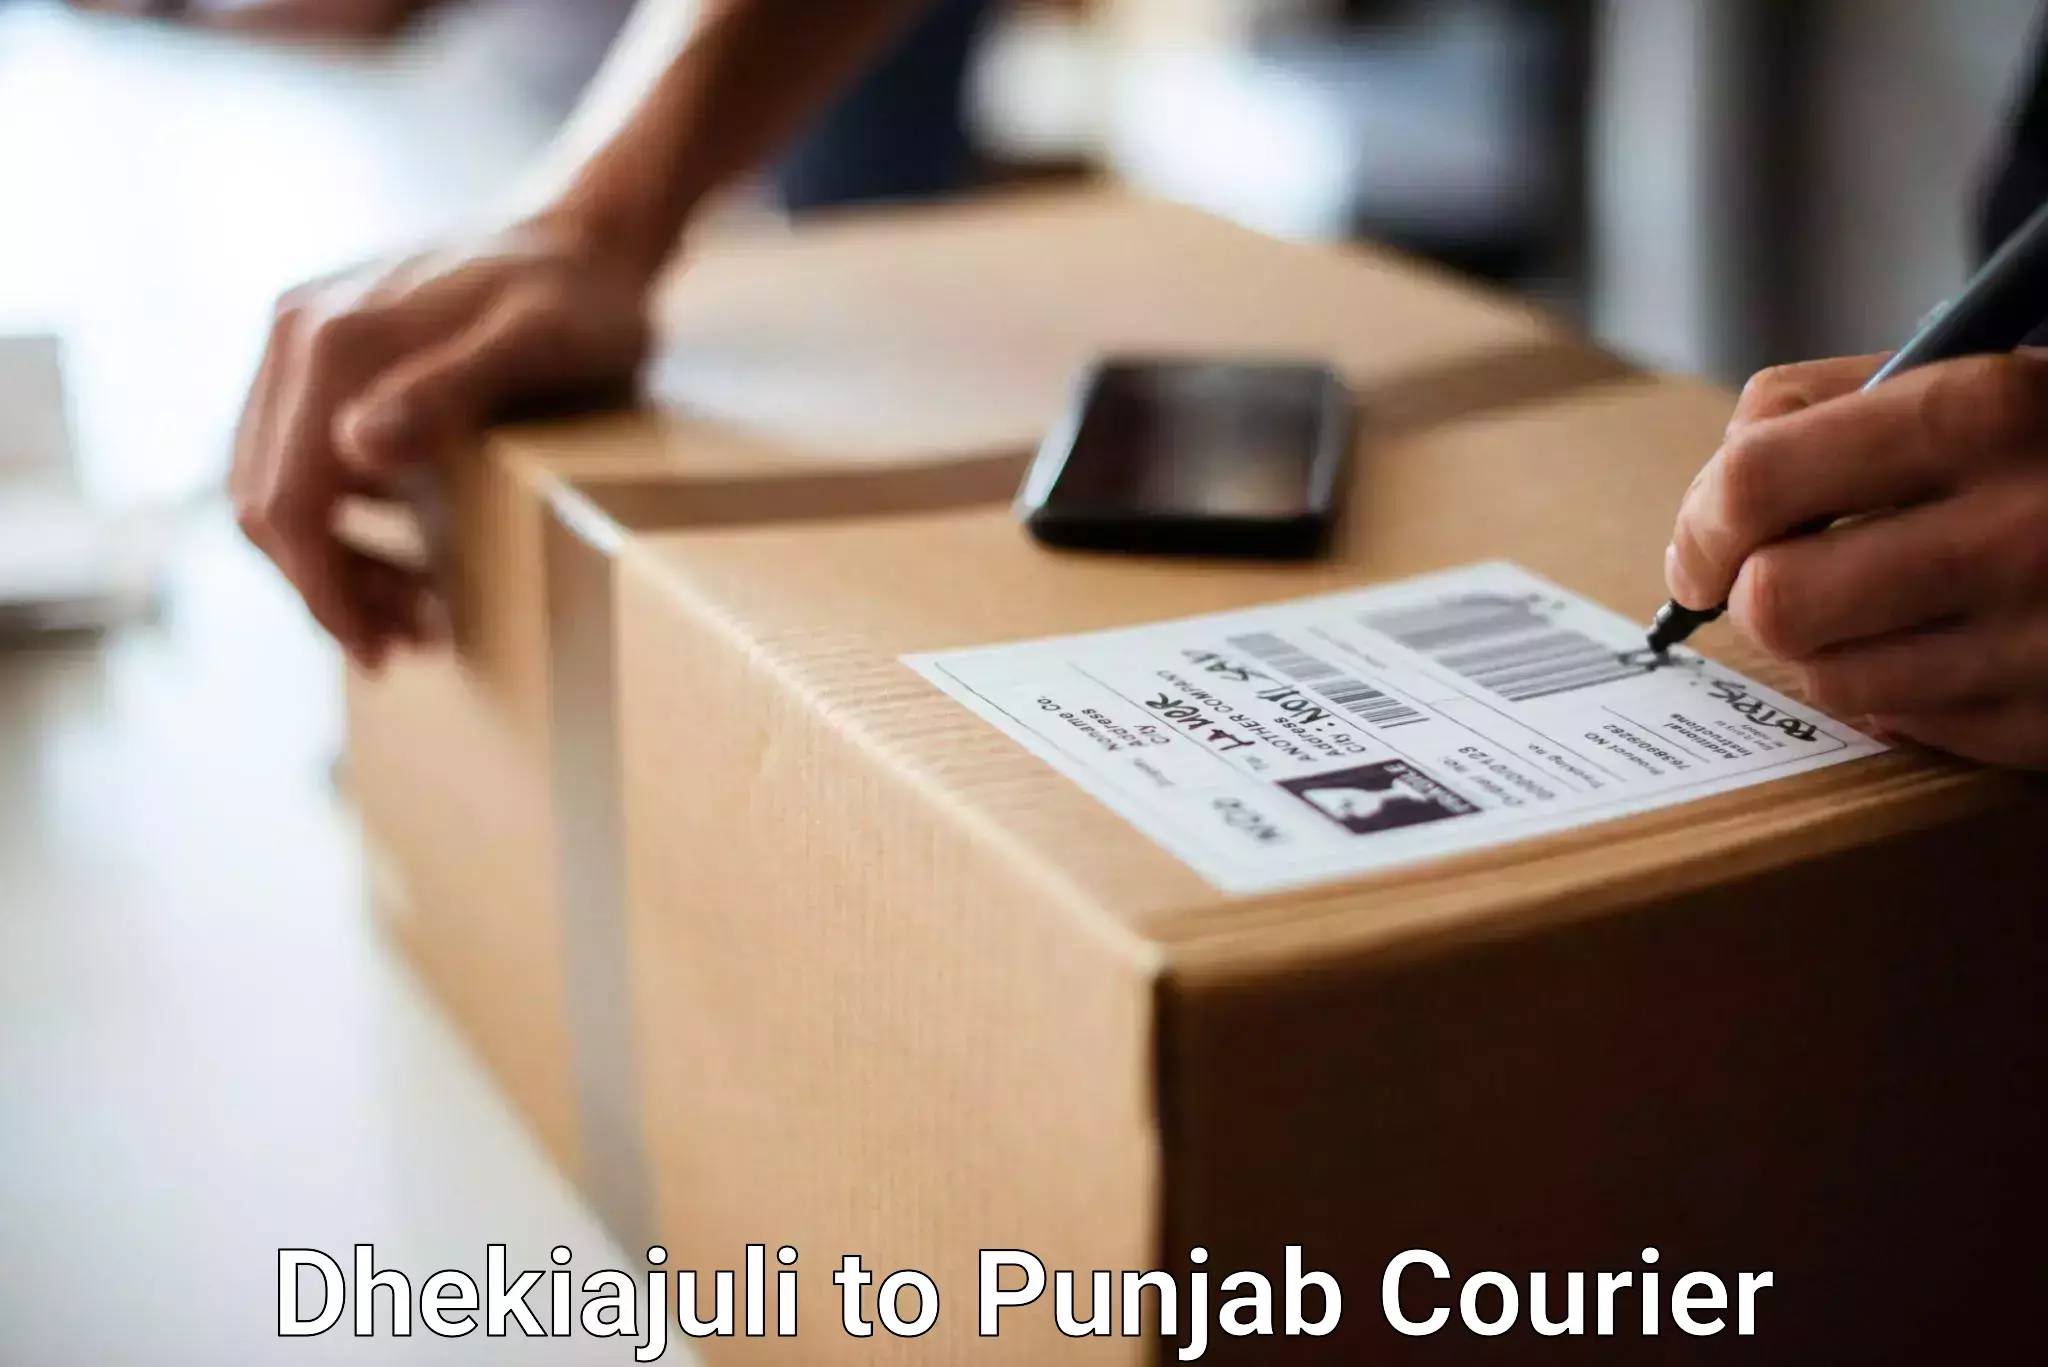 Excess baggage transport in Dhekiajuli to Punjab